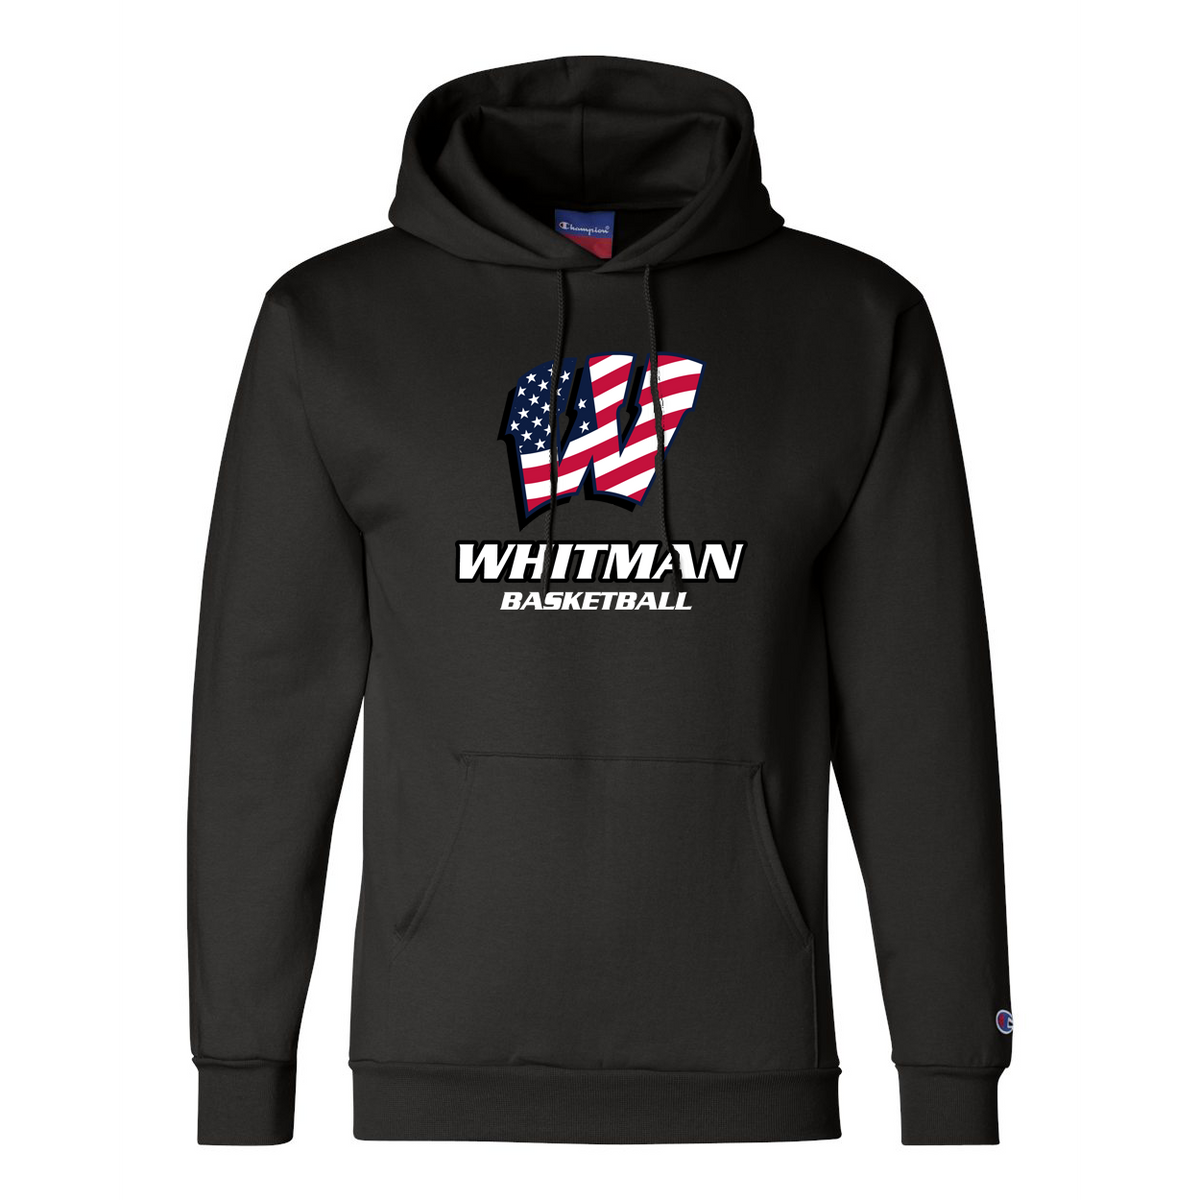 Whitman Basketball Champion Double Dry Eco Hooded Sweatshirt